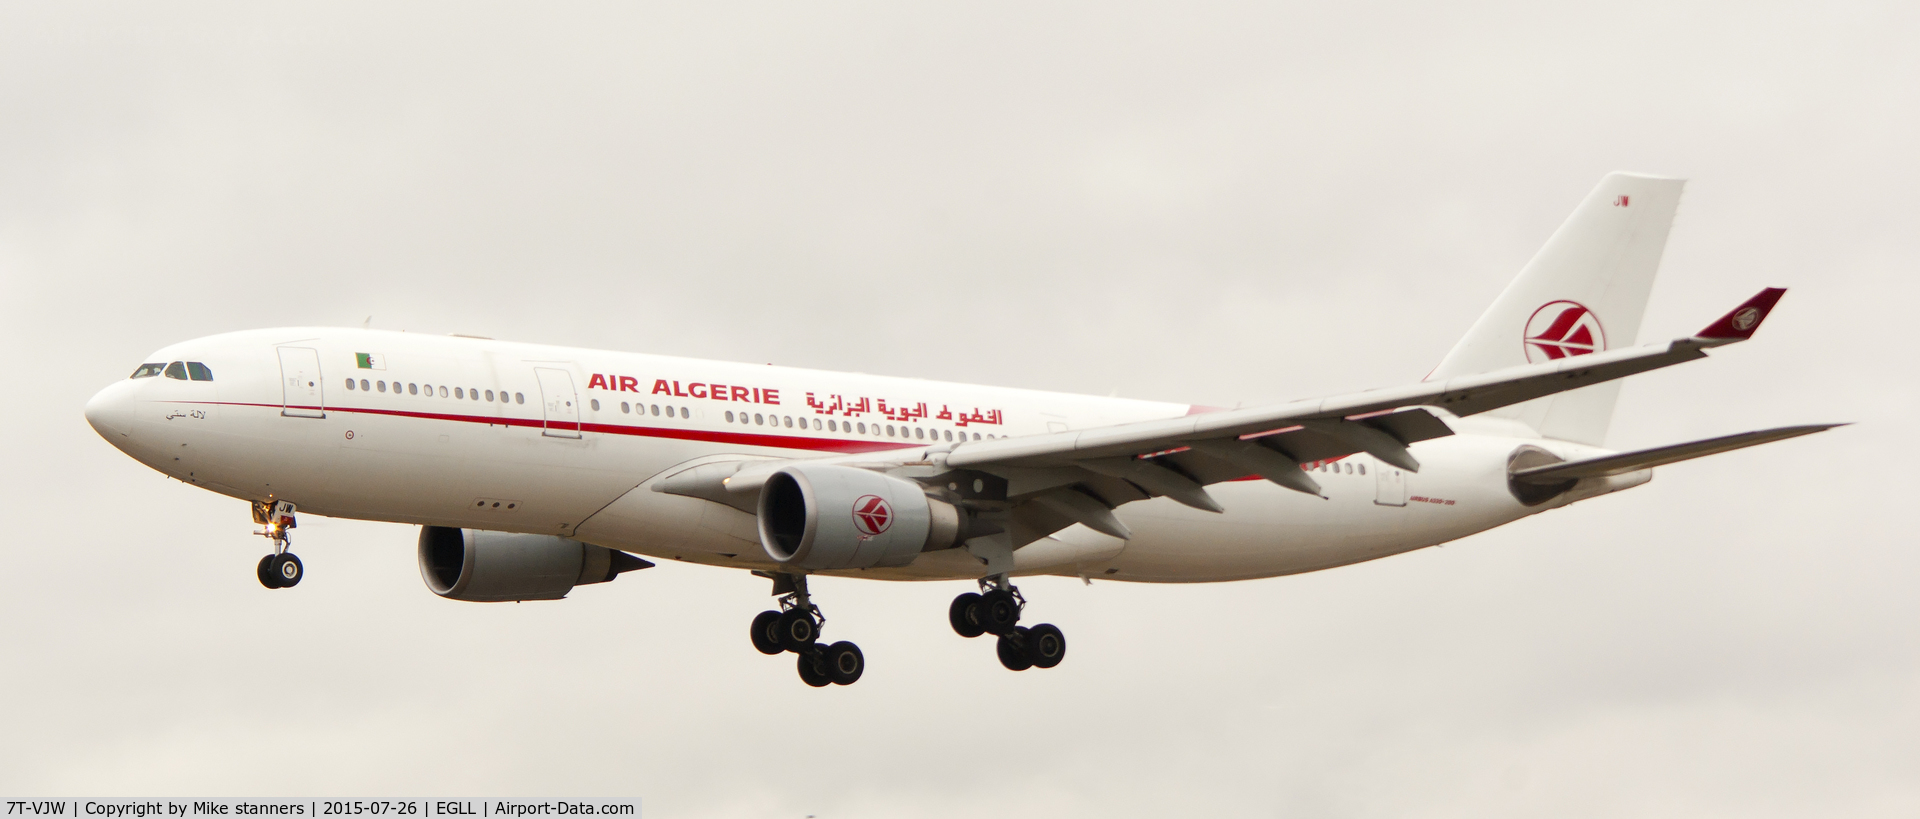 7T-VJW, 2005 Airbus A330-202 C/N 647, Air Algerie A330- 202 Landing runway 09R from ALG,HR 26.7.15